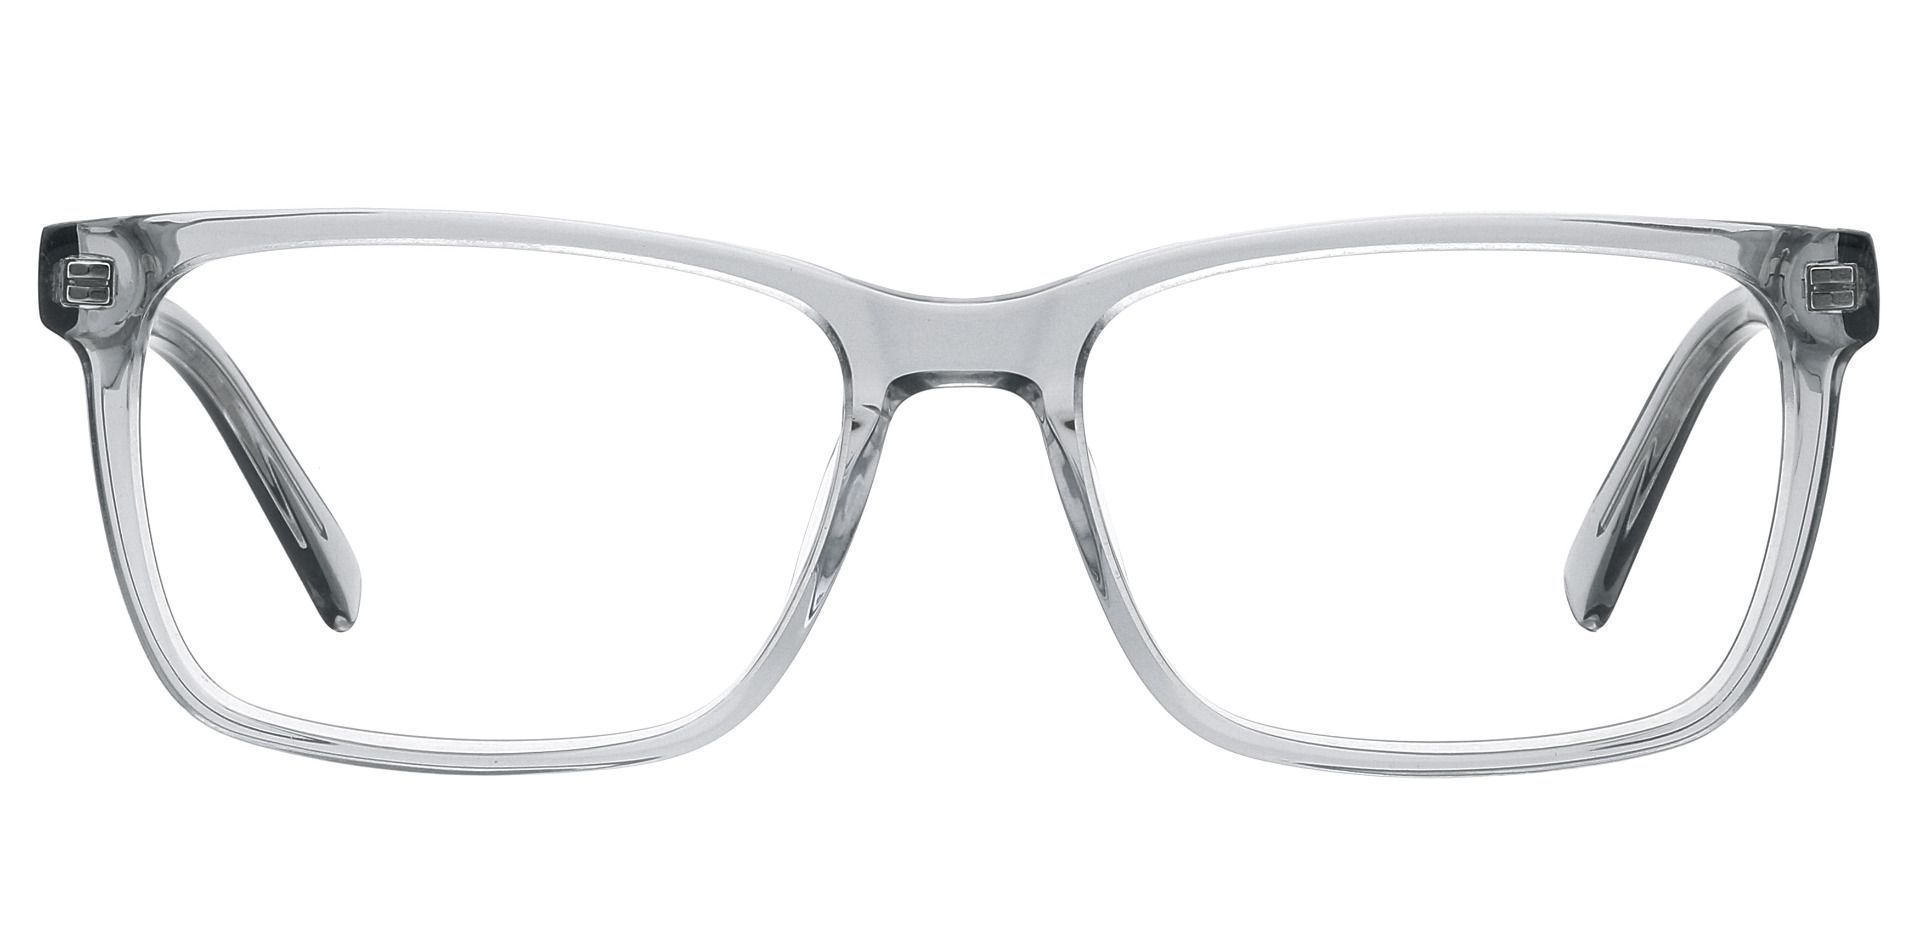 Galaxy Rectangle Prescription Glasses - Gray